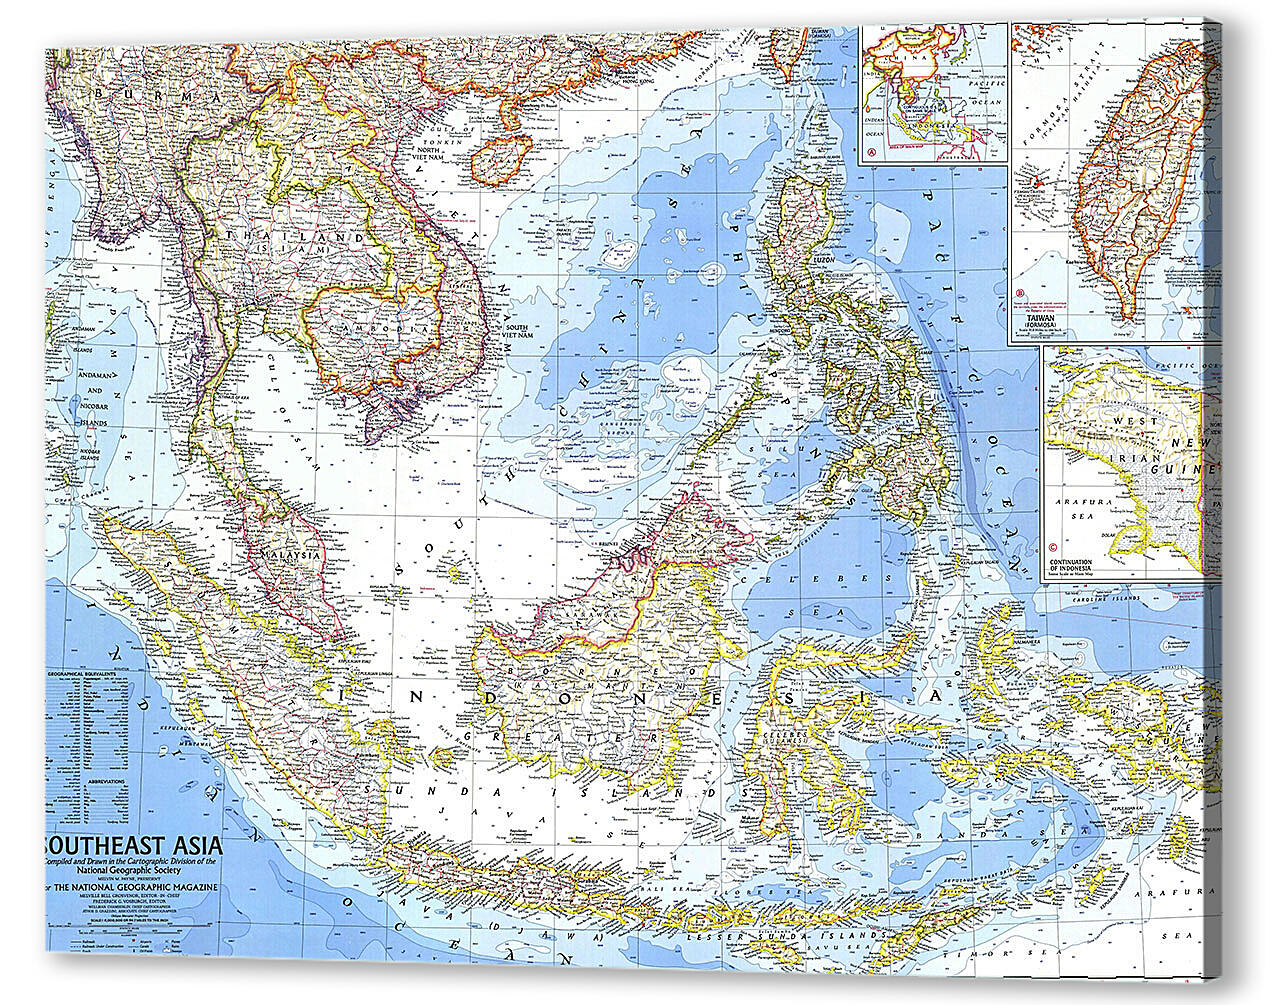 Картина маслом - Карта Юго-Восточной Азии
